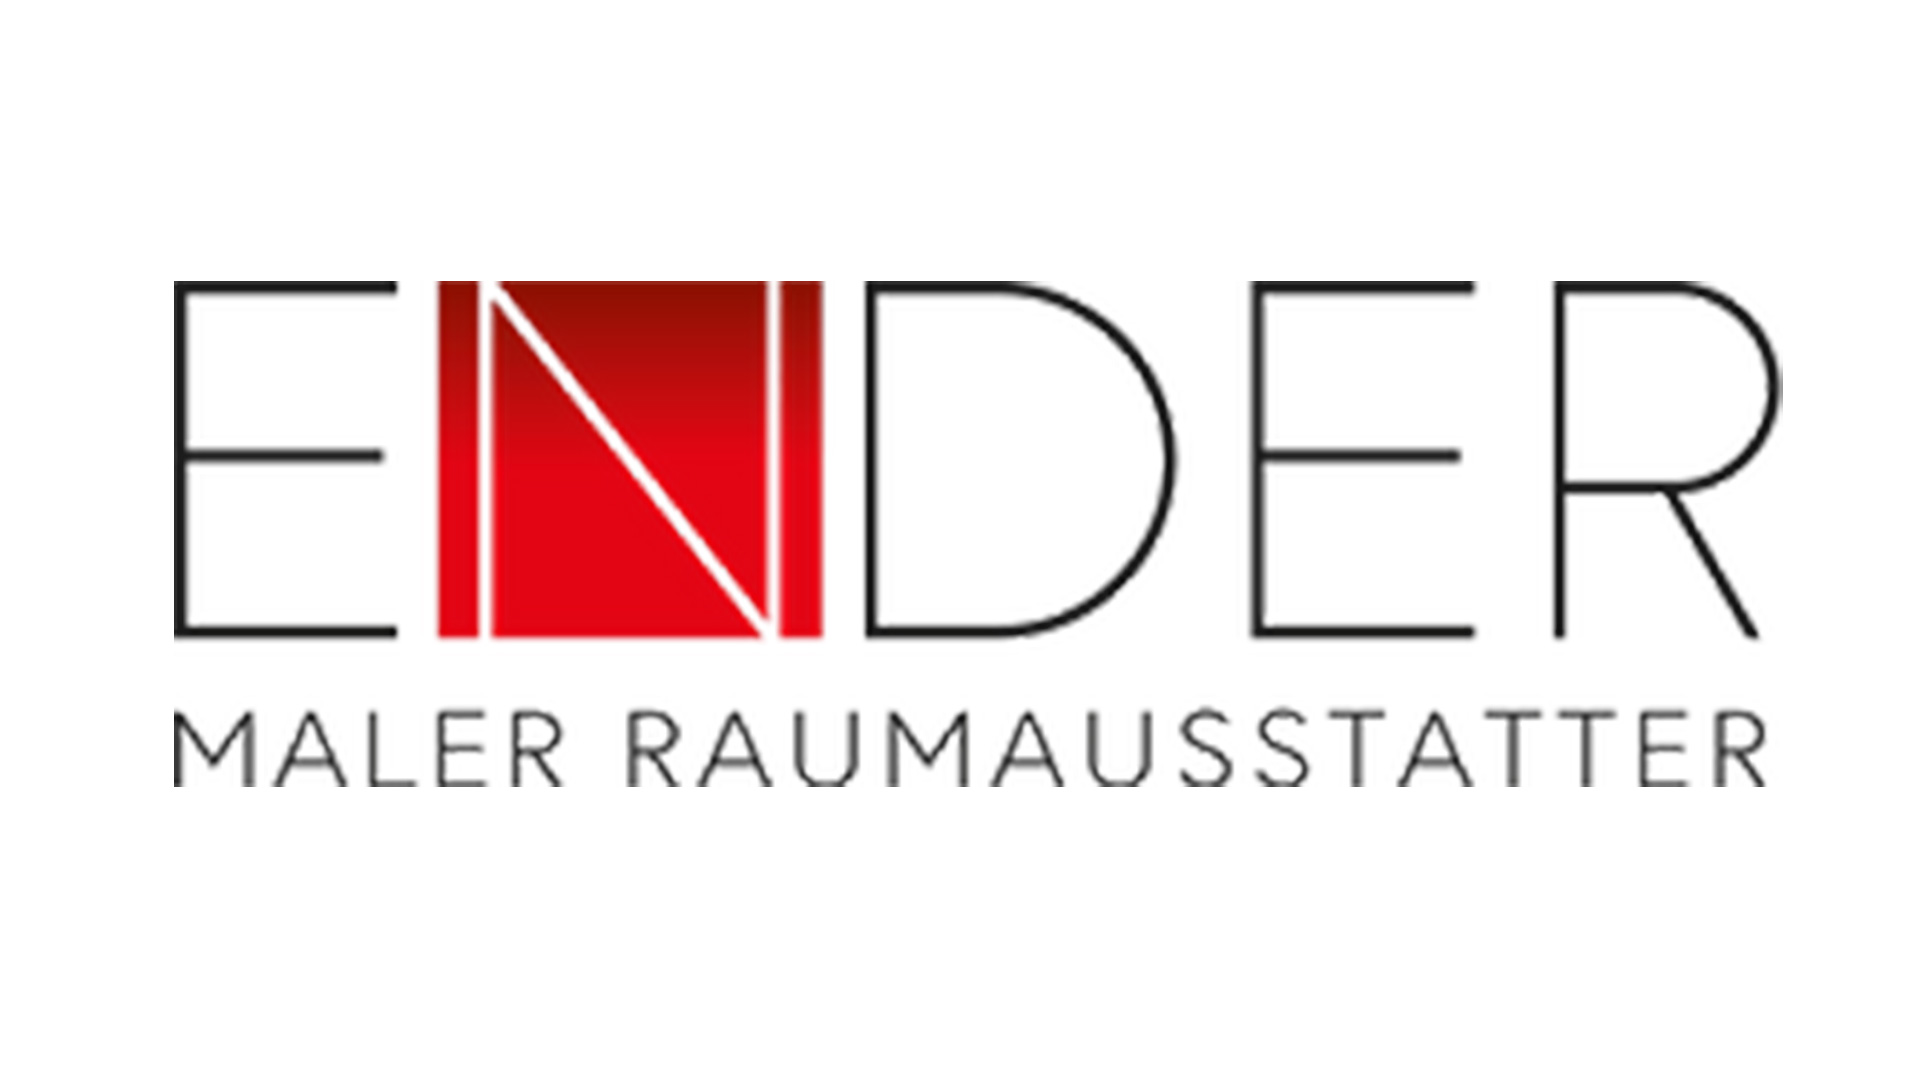 Ender Maler Raumausstatter Logo